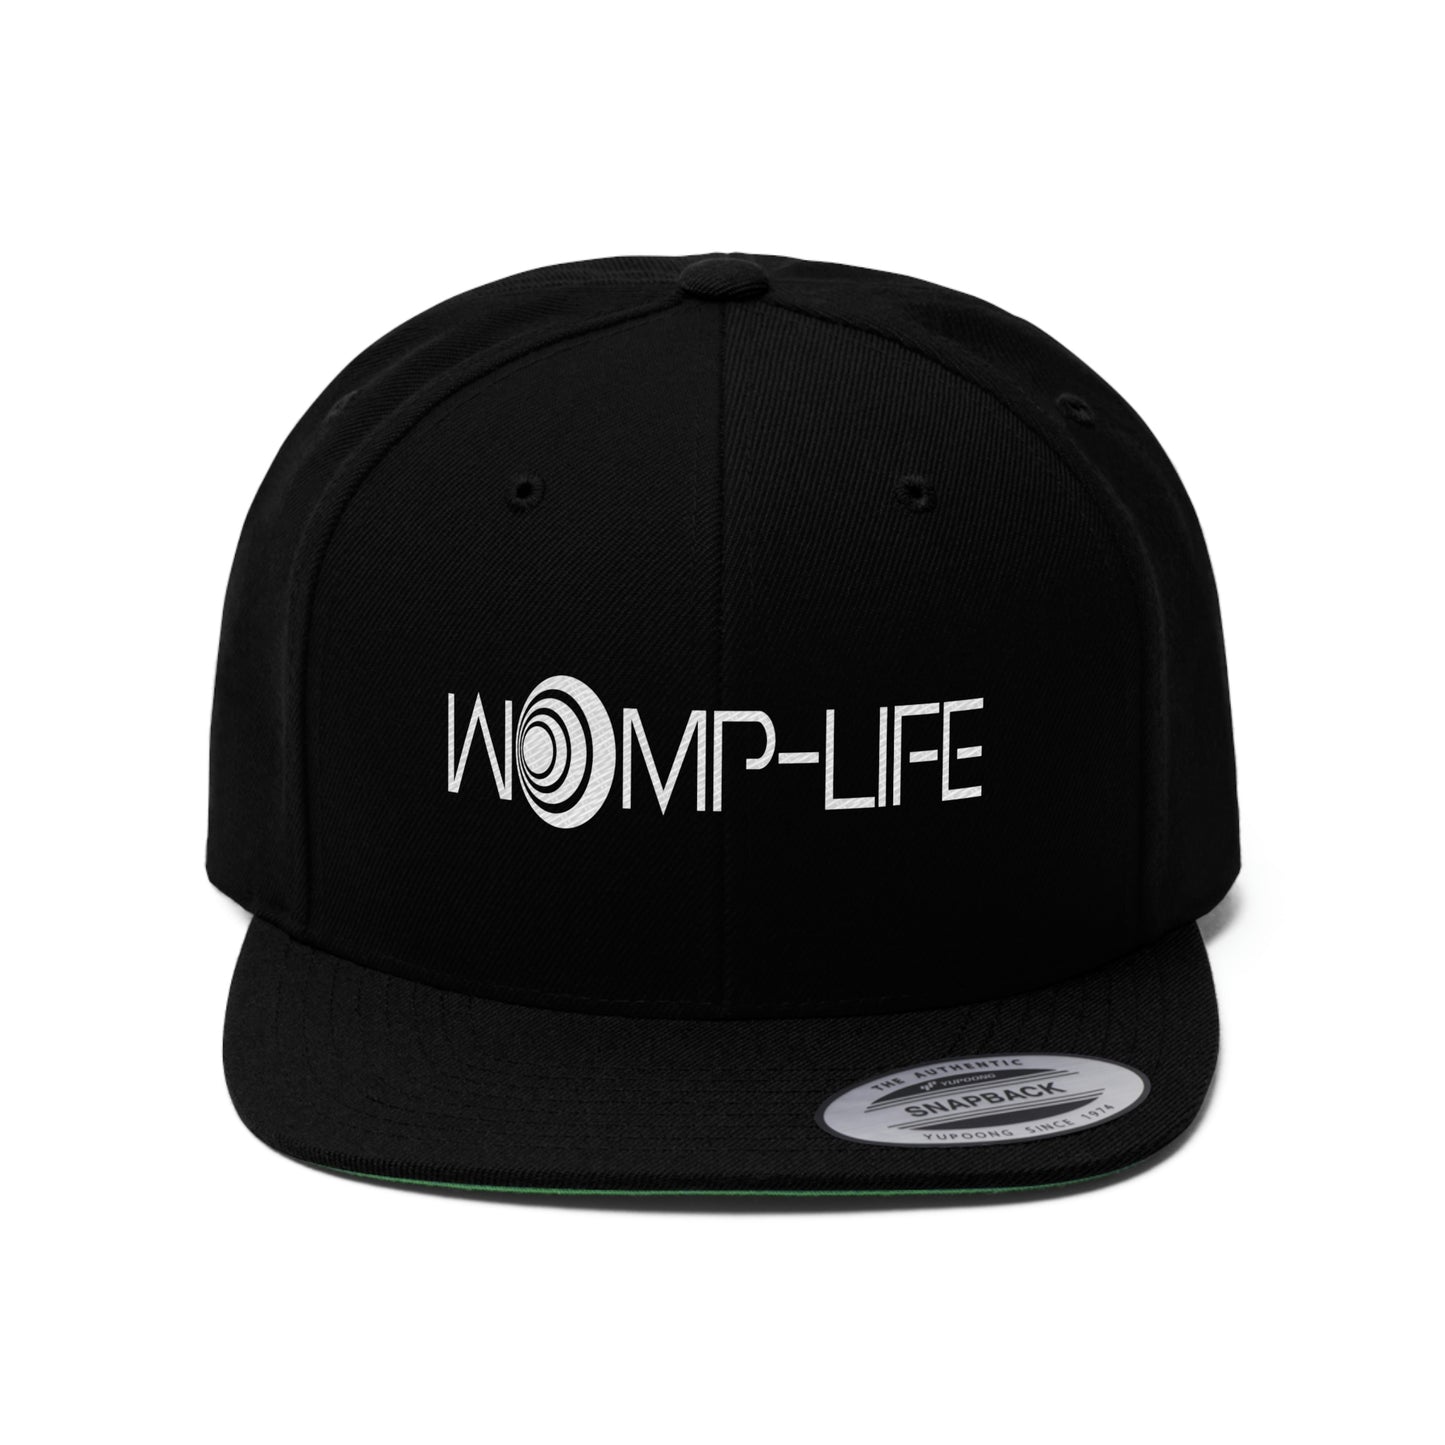 Womp-Life Blk Unisex Flat Bill Hat